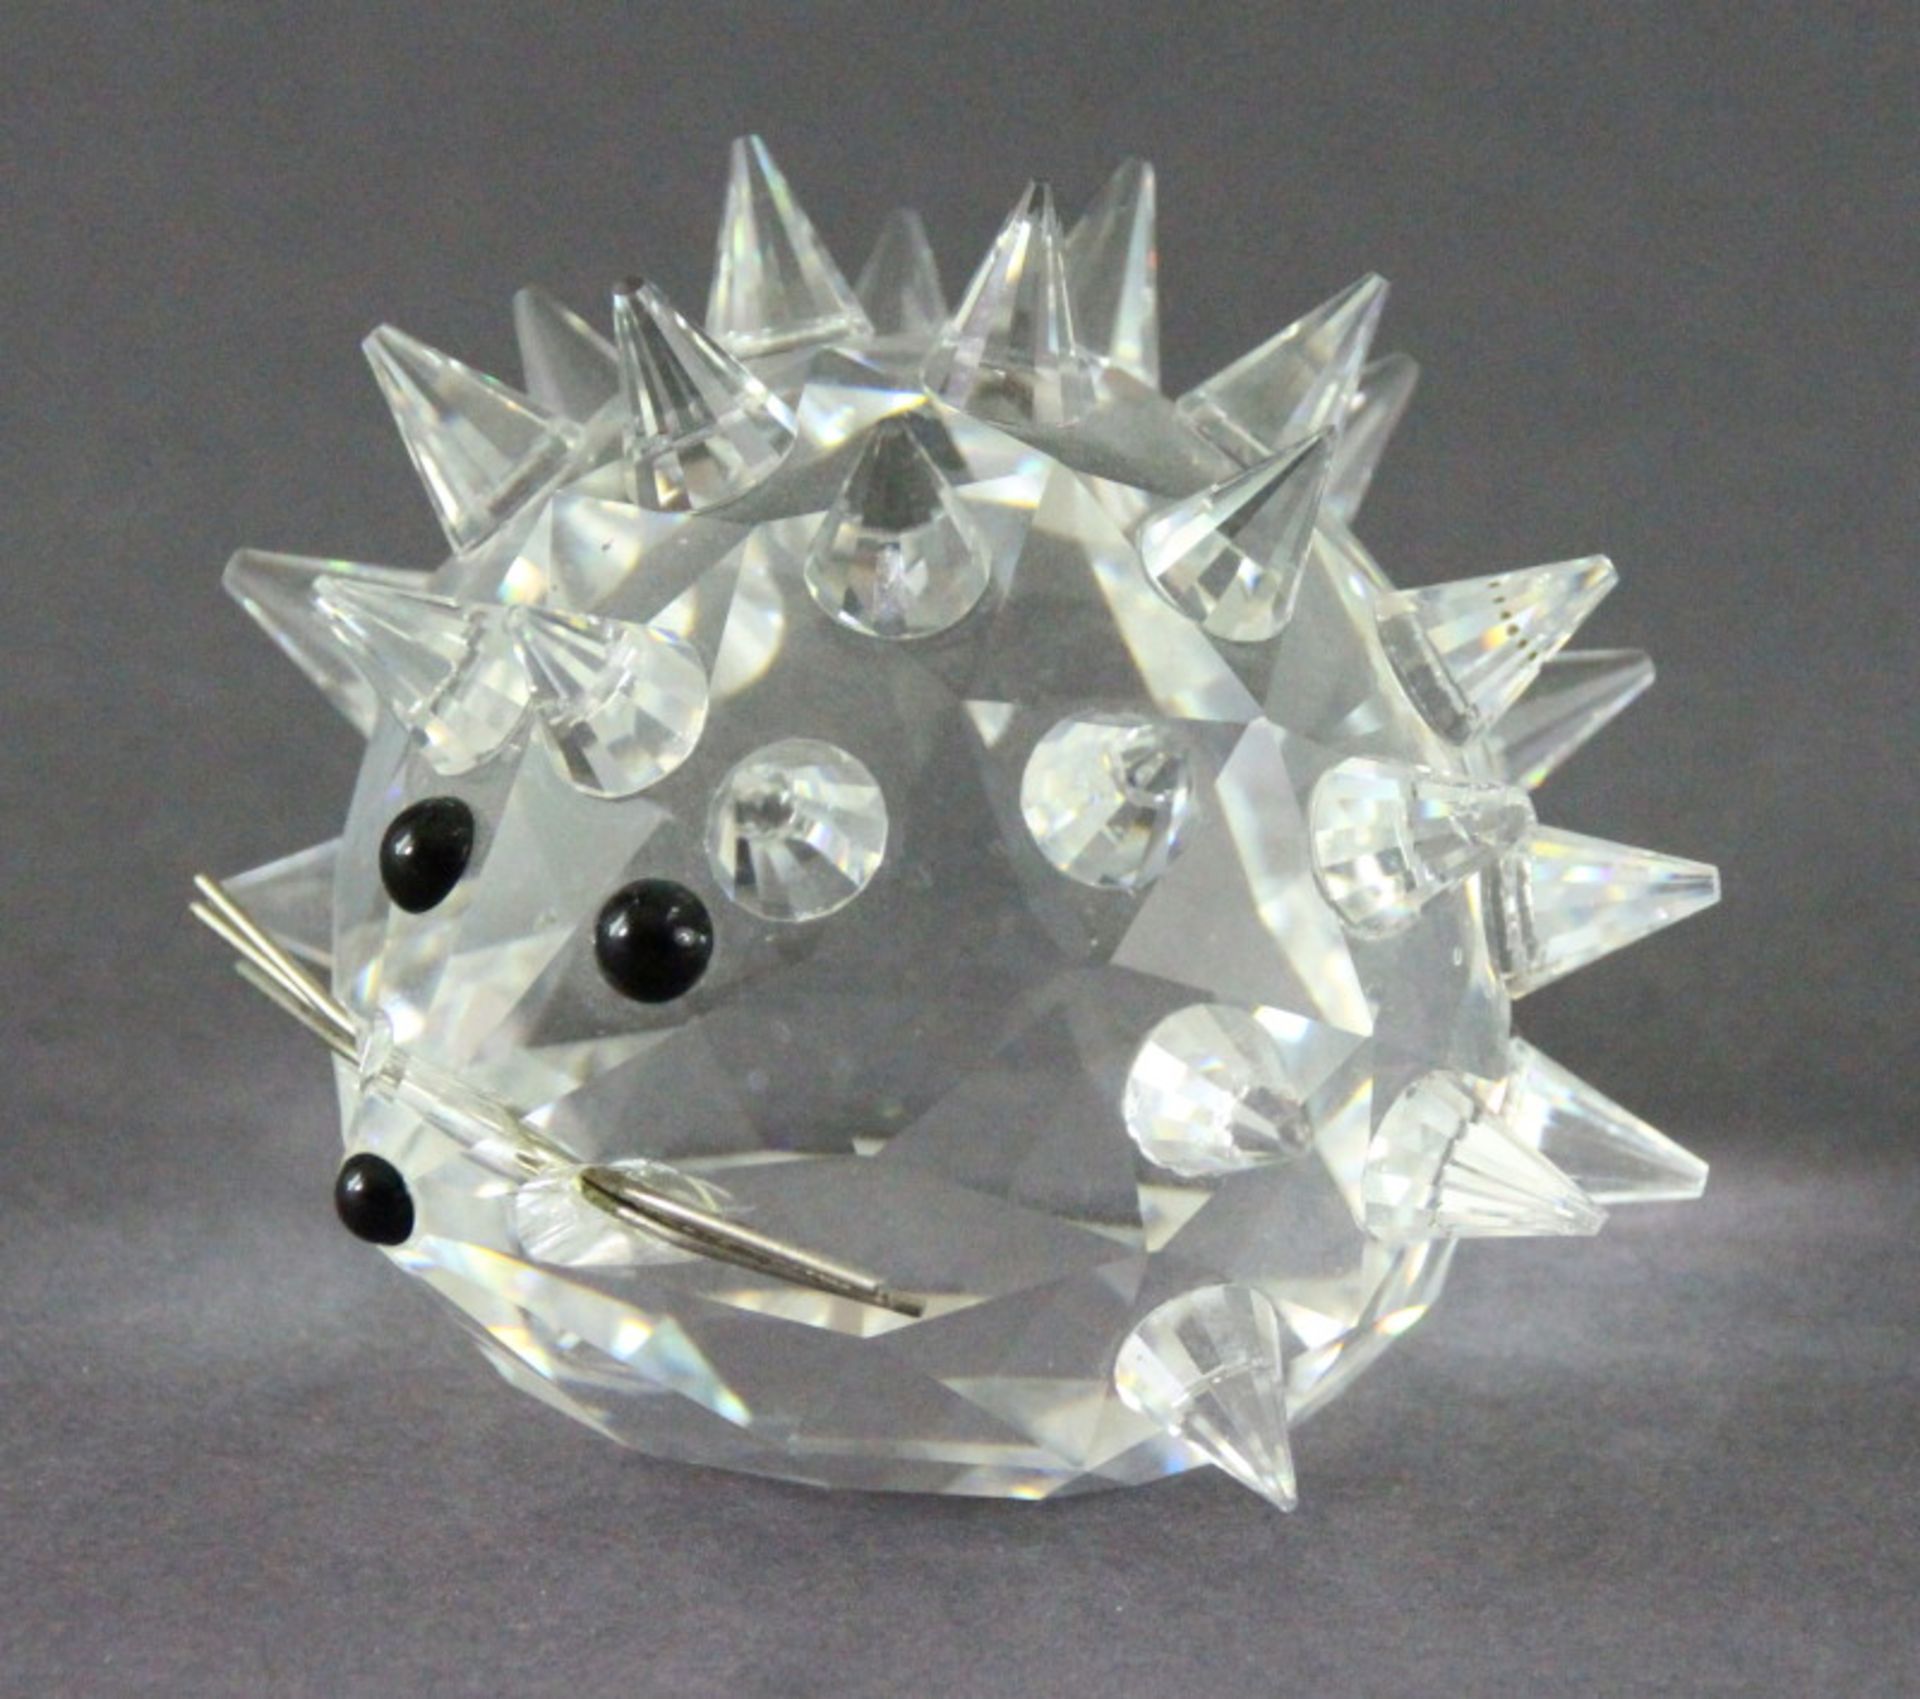 Swarowvski Kristall "Igel"signiert, guter Zustand, Durchmesser ca.: 5cm